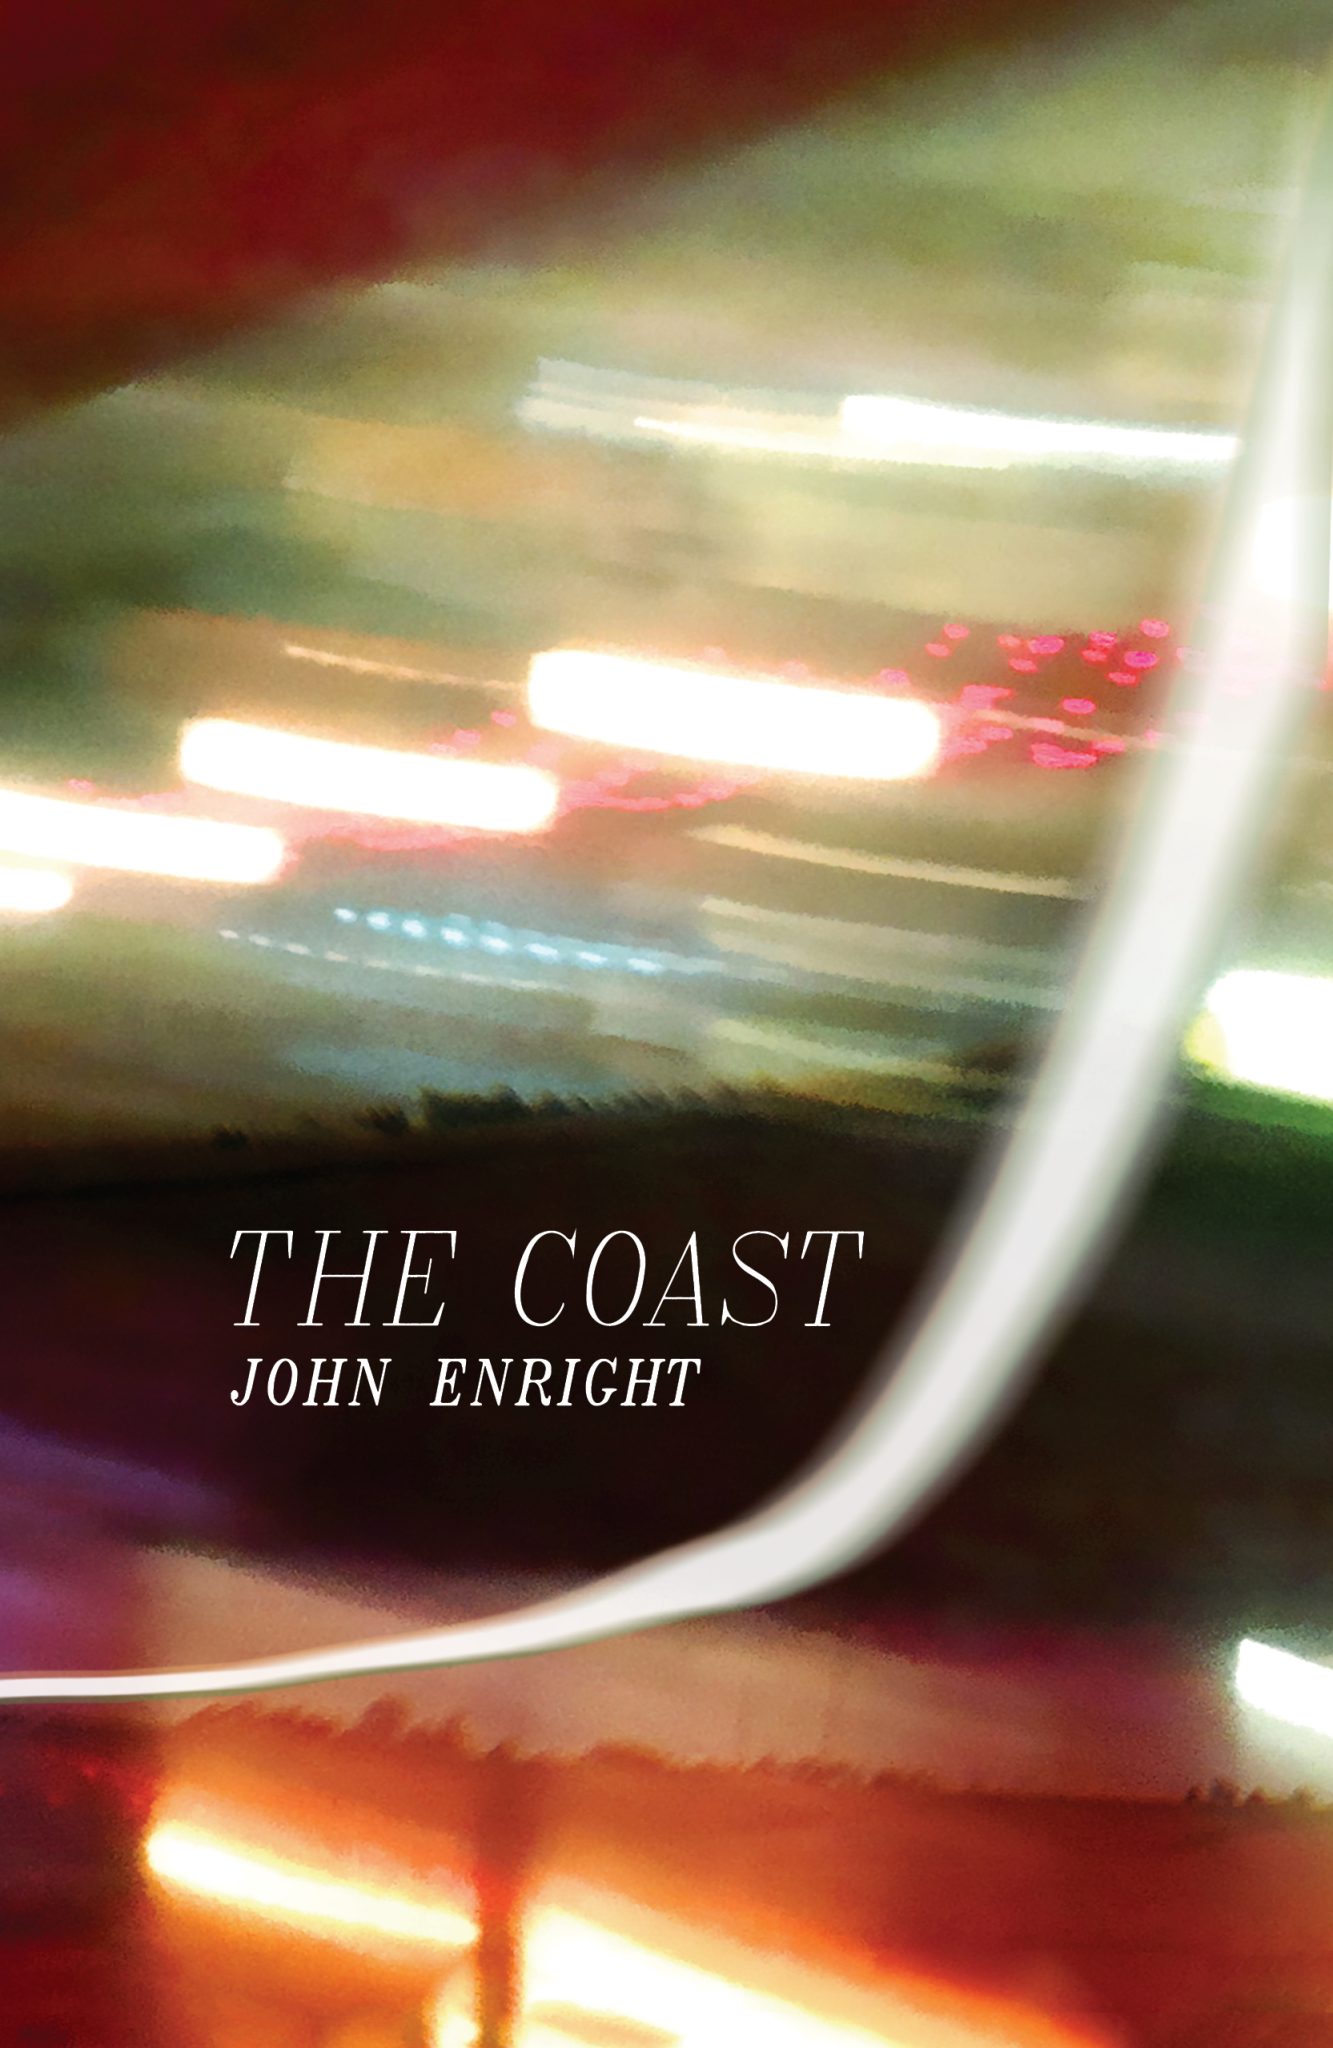 The Coast by John Enright